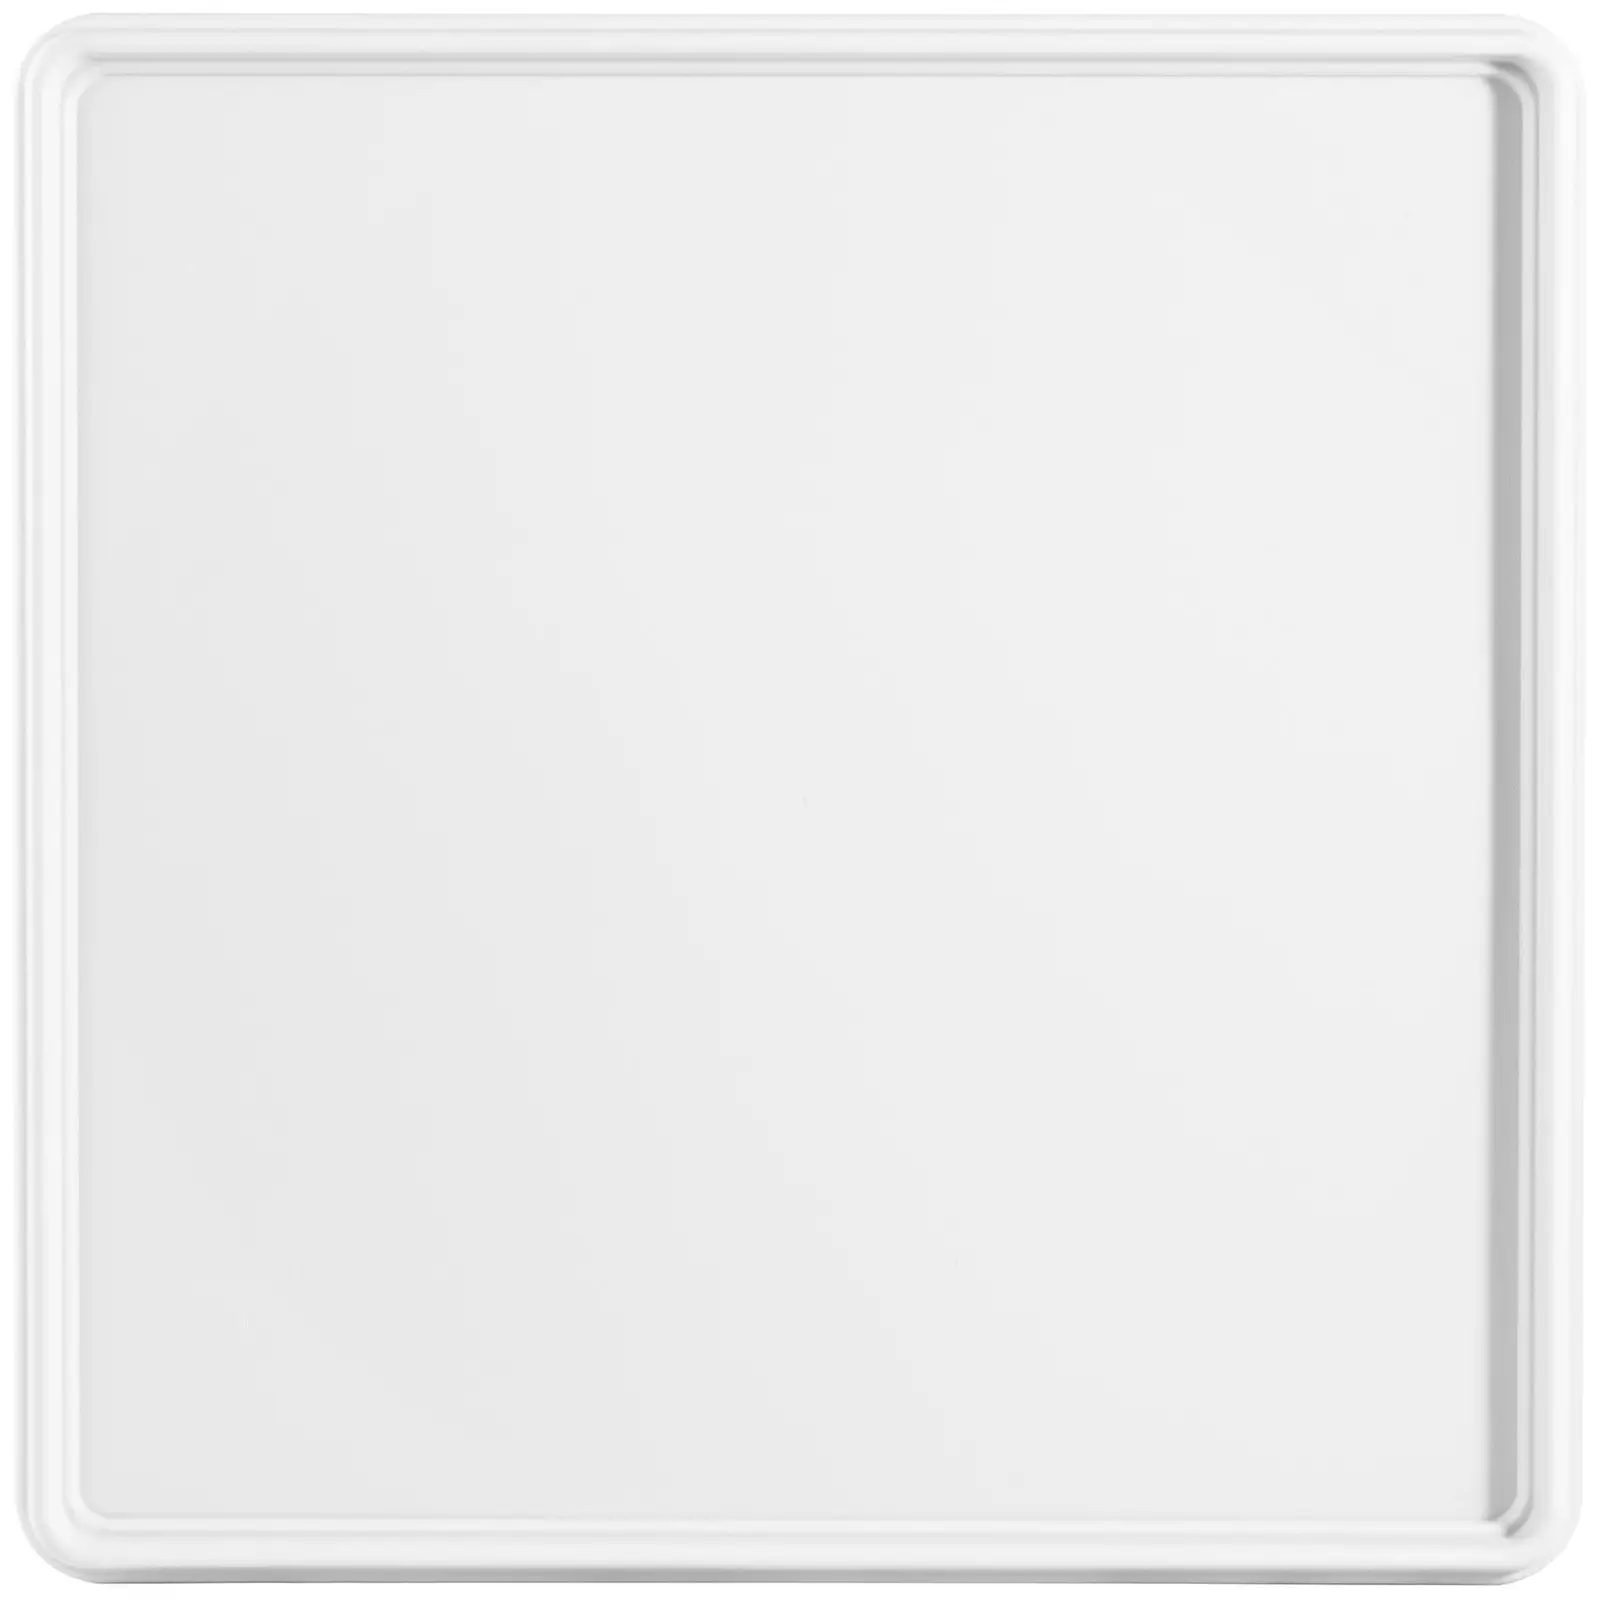 Coperchio per cestello Camrack - 50 x 50 x 2.4 cm - Bianco